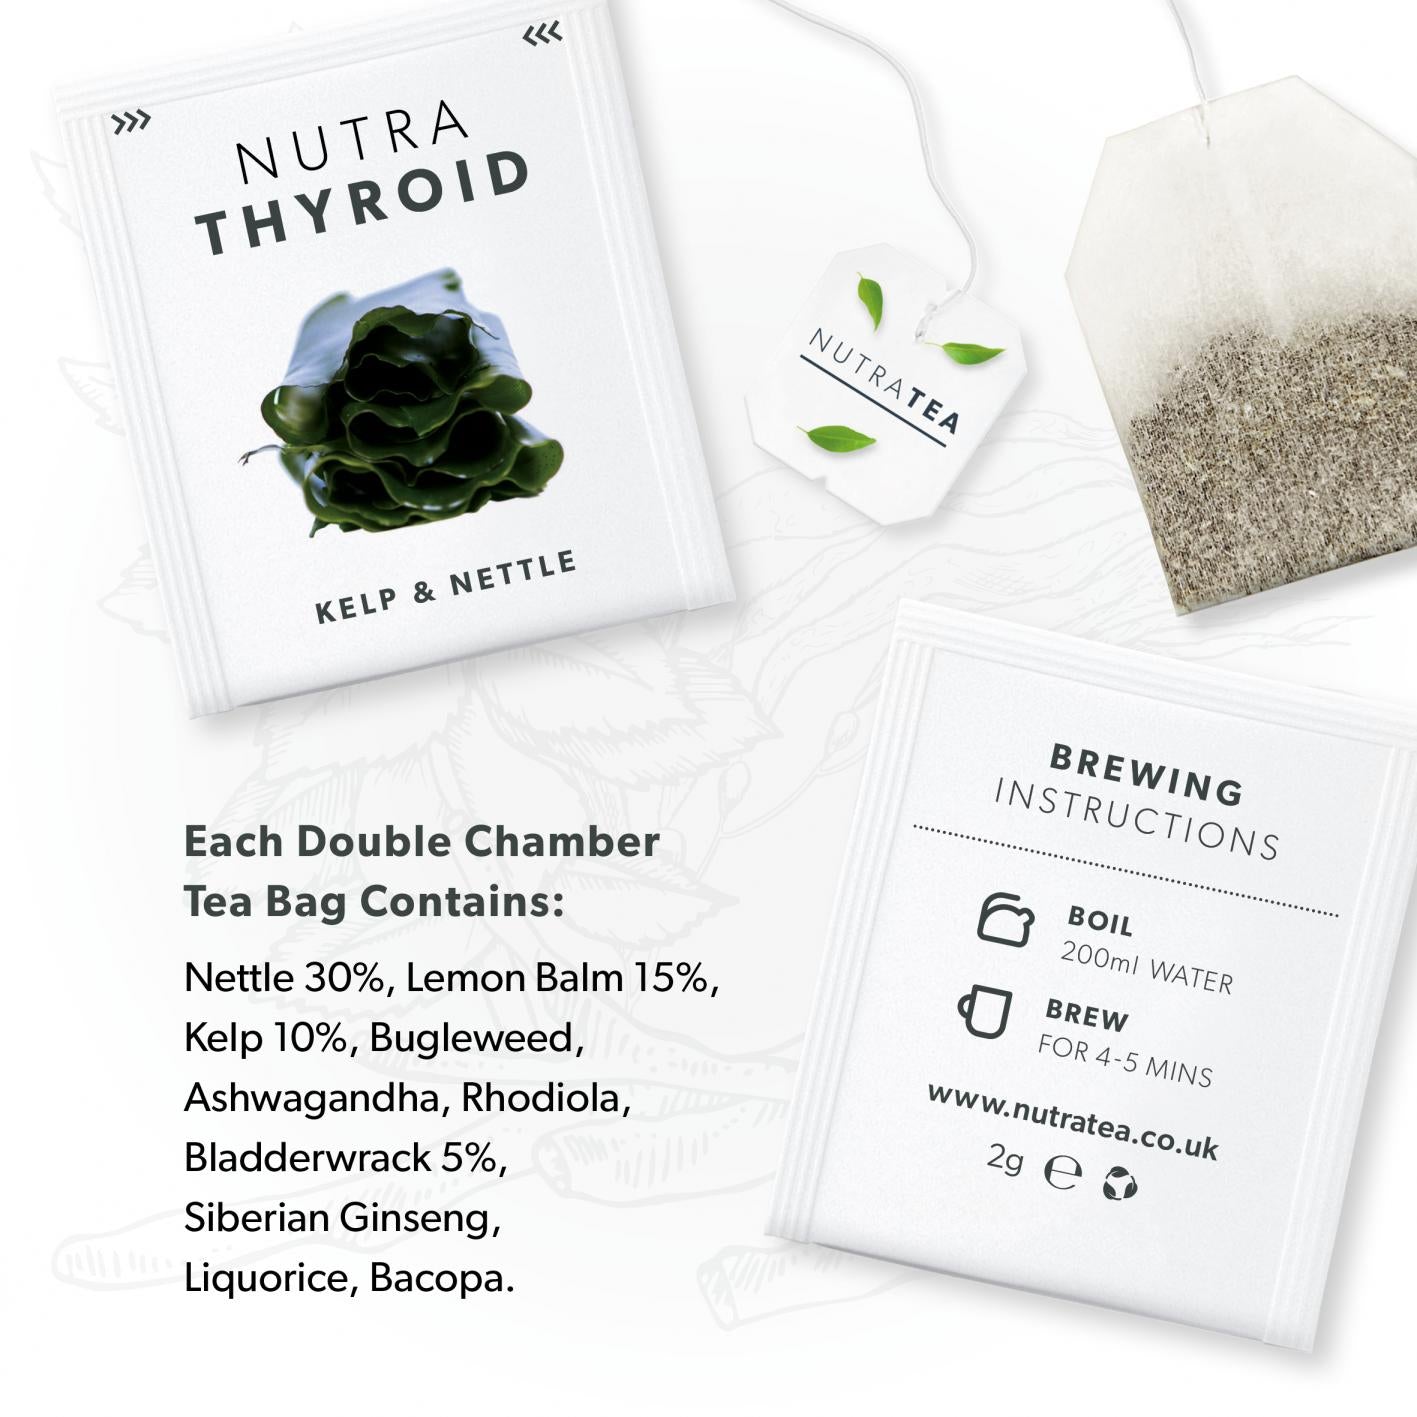 Nutratea Nutra Thyroid Tea Bags 20's